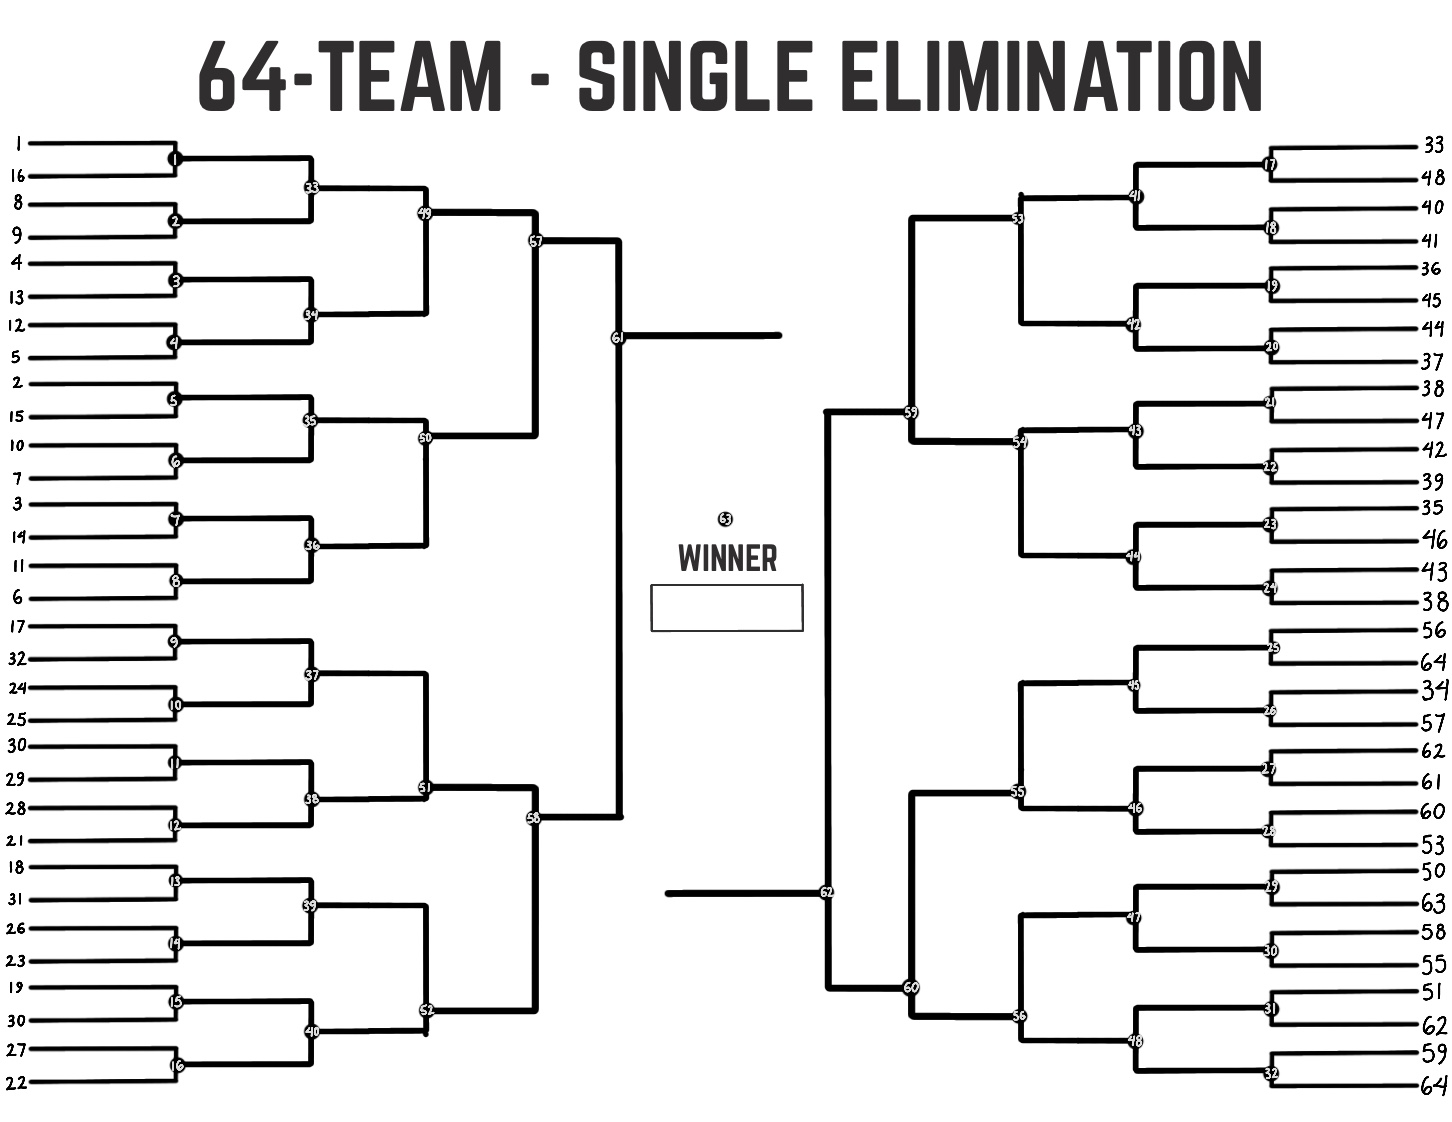 64 Team Bracket Single Elimination - 64 Team Single Elimination Printable T...